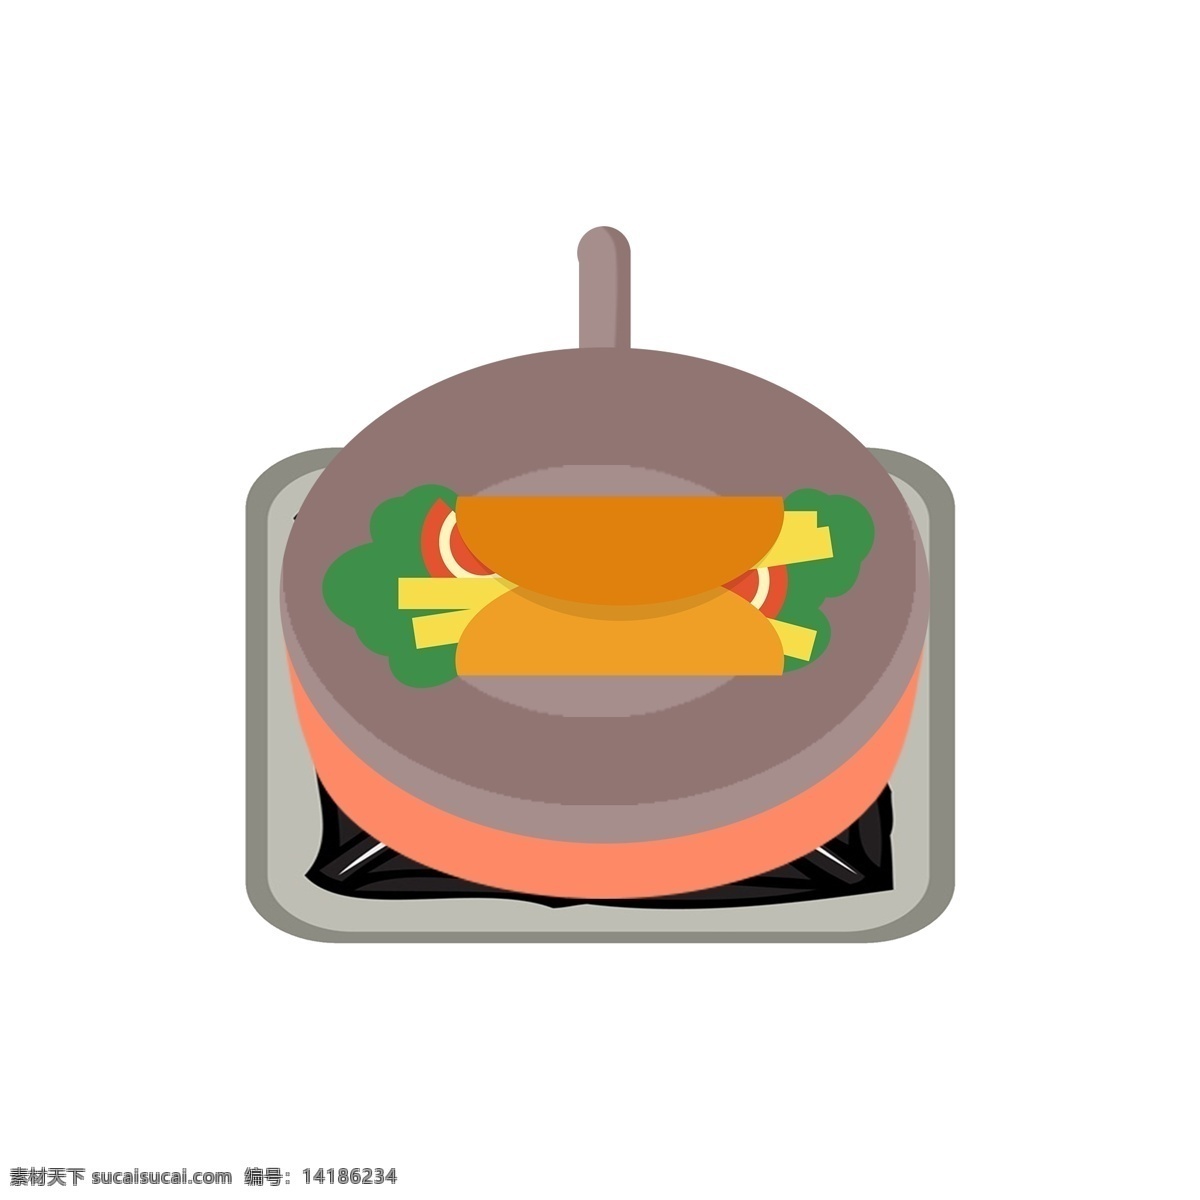 电磁炉 上 煮 东西 锅 免 抠 图 美食 卡通图案 美味 食物 煮东西 免抠图 煮菜 厨房用品 生活用品 饭菜